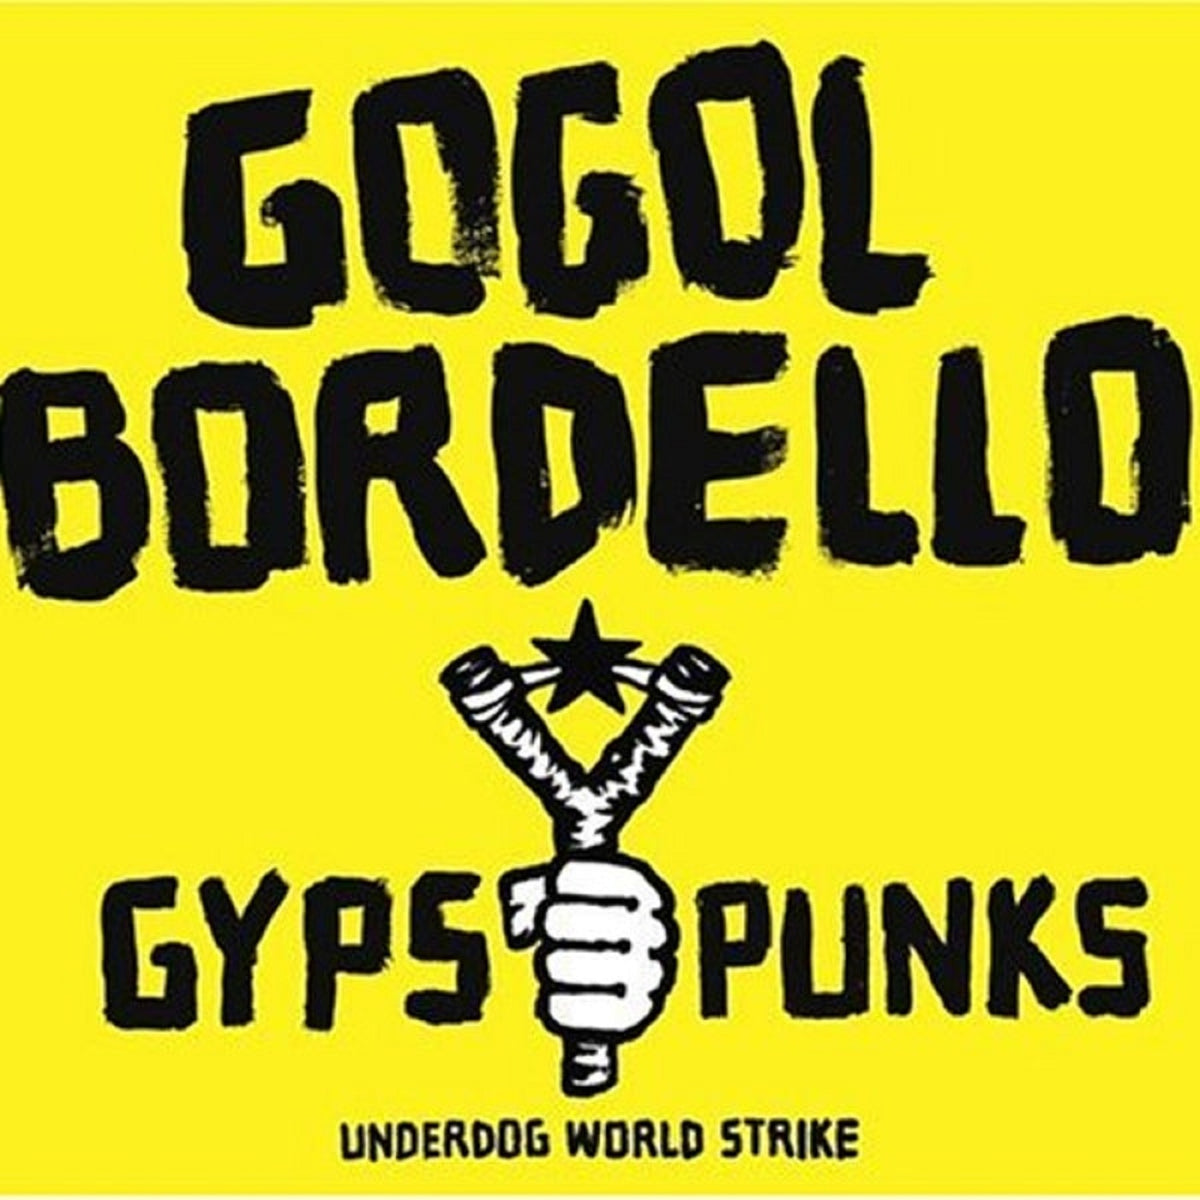 Gogol Bordello - Gypsy Punks (Underdog World Strike) - BROKEN 8 RECORDS